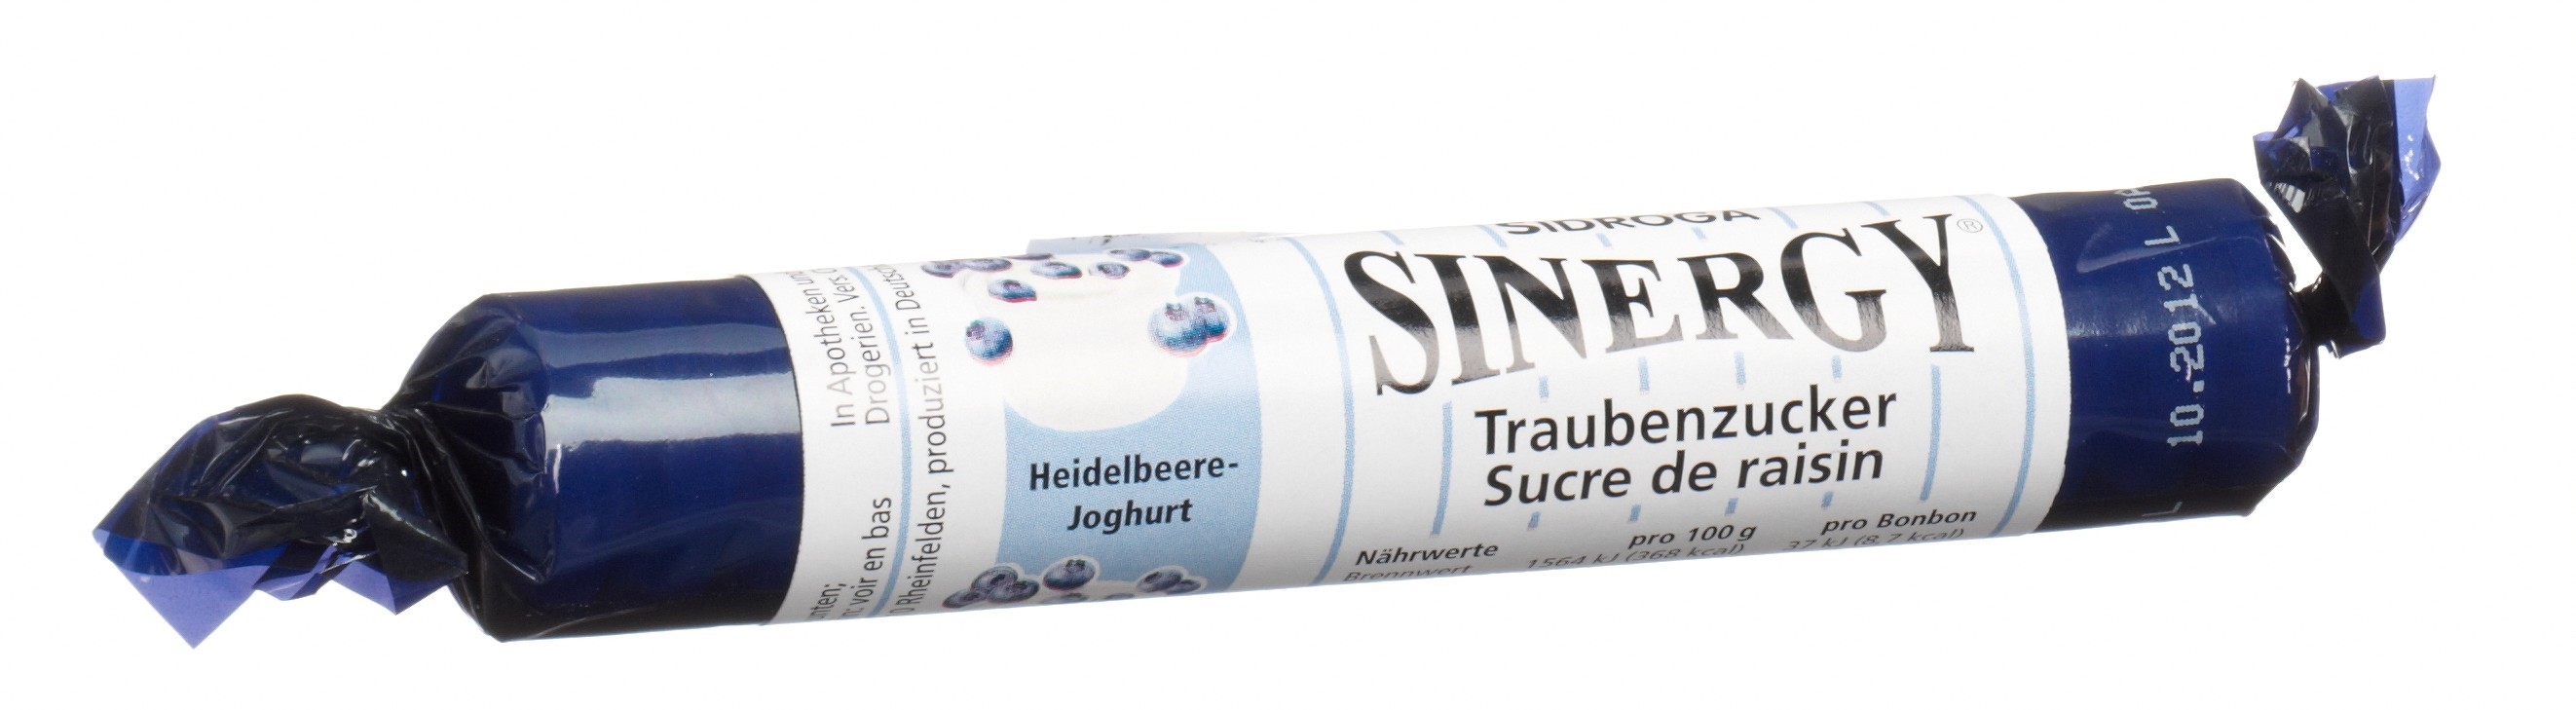 SINERGY Traubenzucker Heidelb Joghurt Rolle 40 g